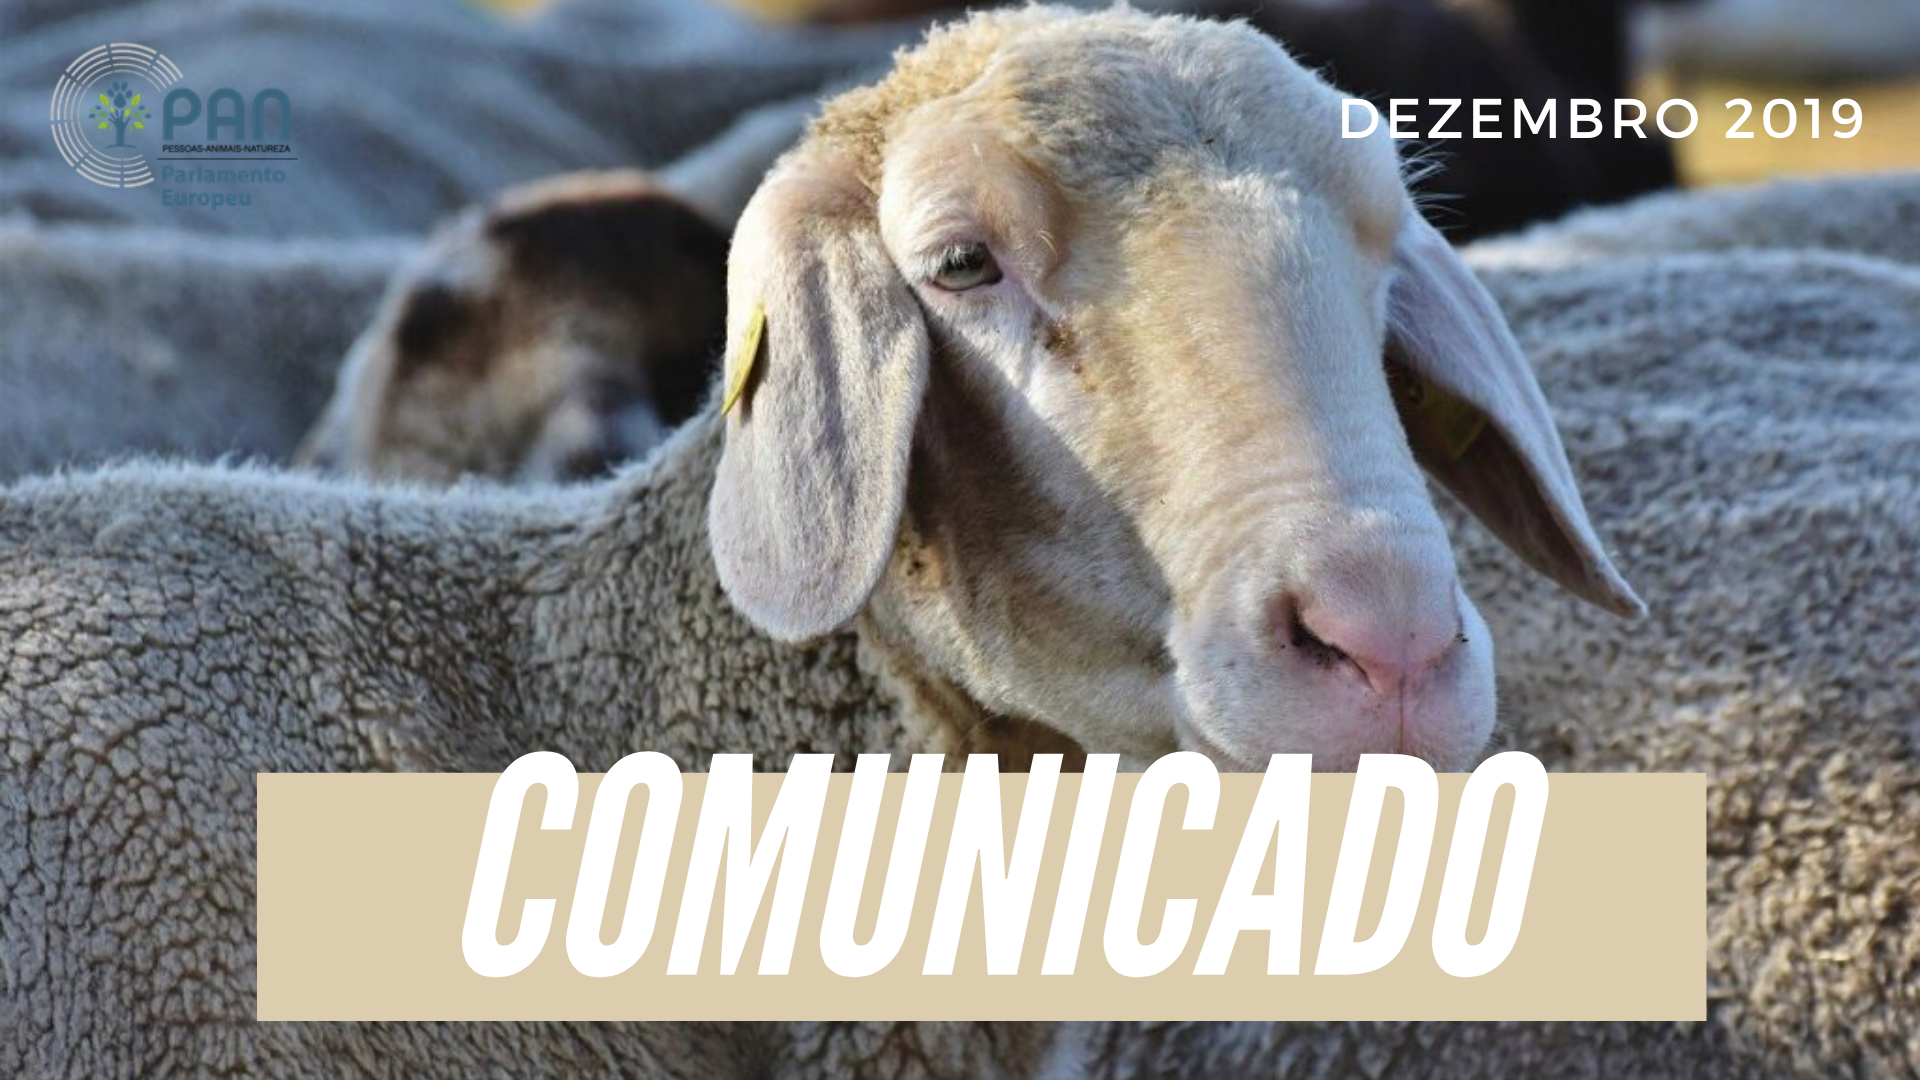 Eurodeputado do PAN questiona Comissão Europeia sobre sanções à Roménia após afogamento de milhares ovelhas